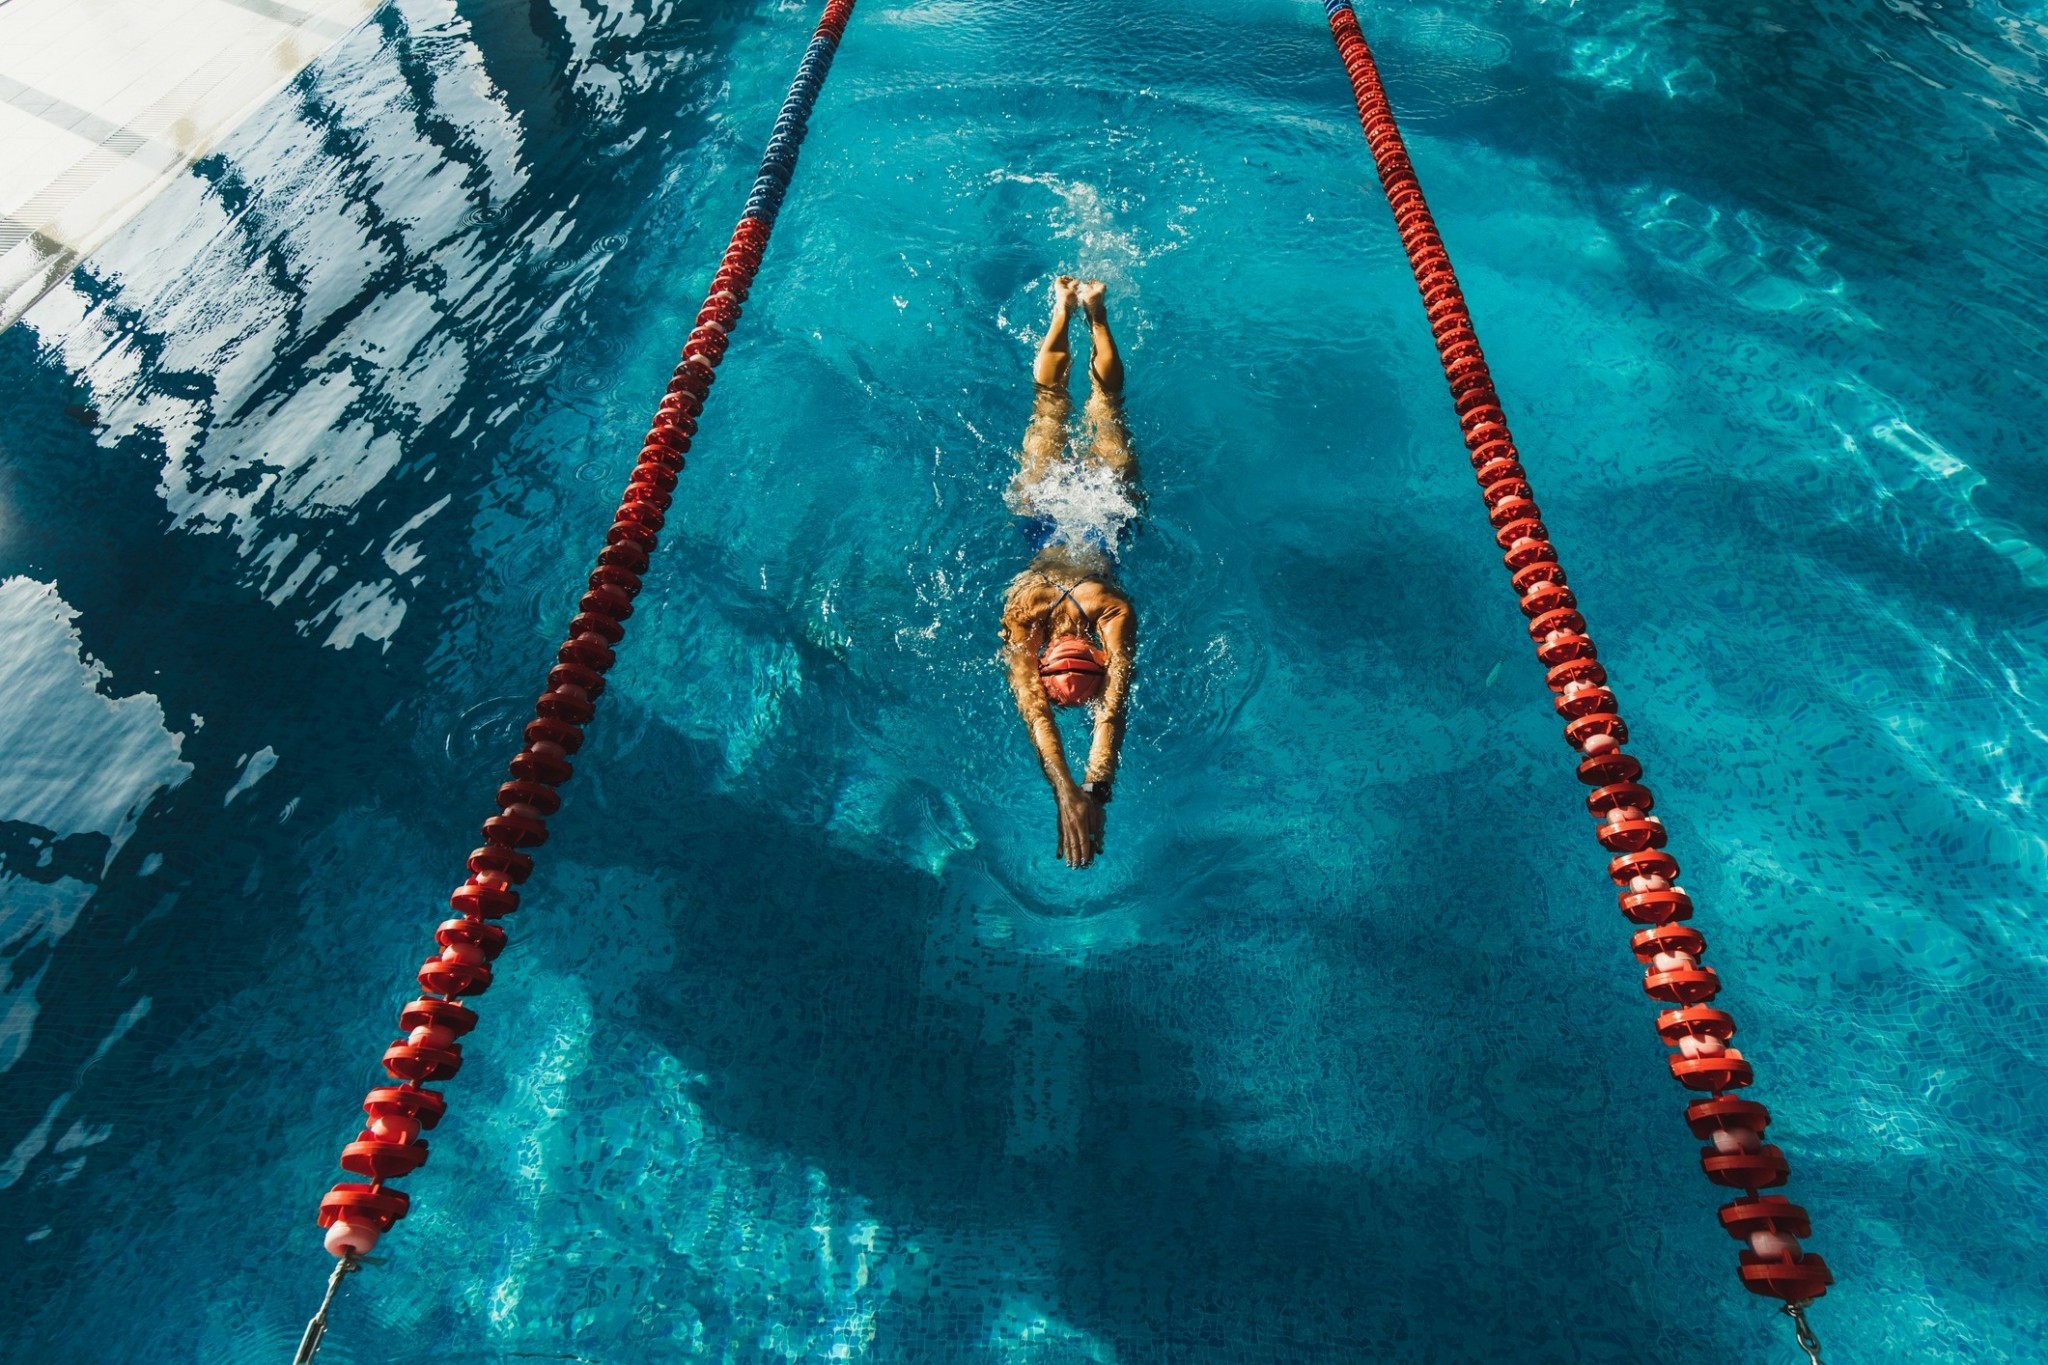 Κολύμβηση ή τρέξιμο; Ποια είναι τελικά η καλύτερη άσκηση;